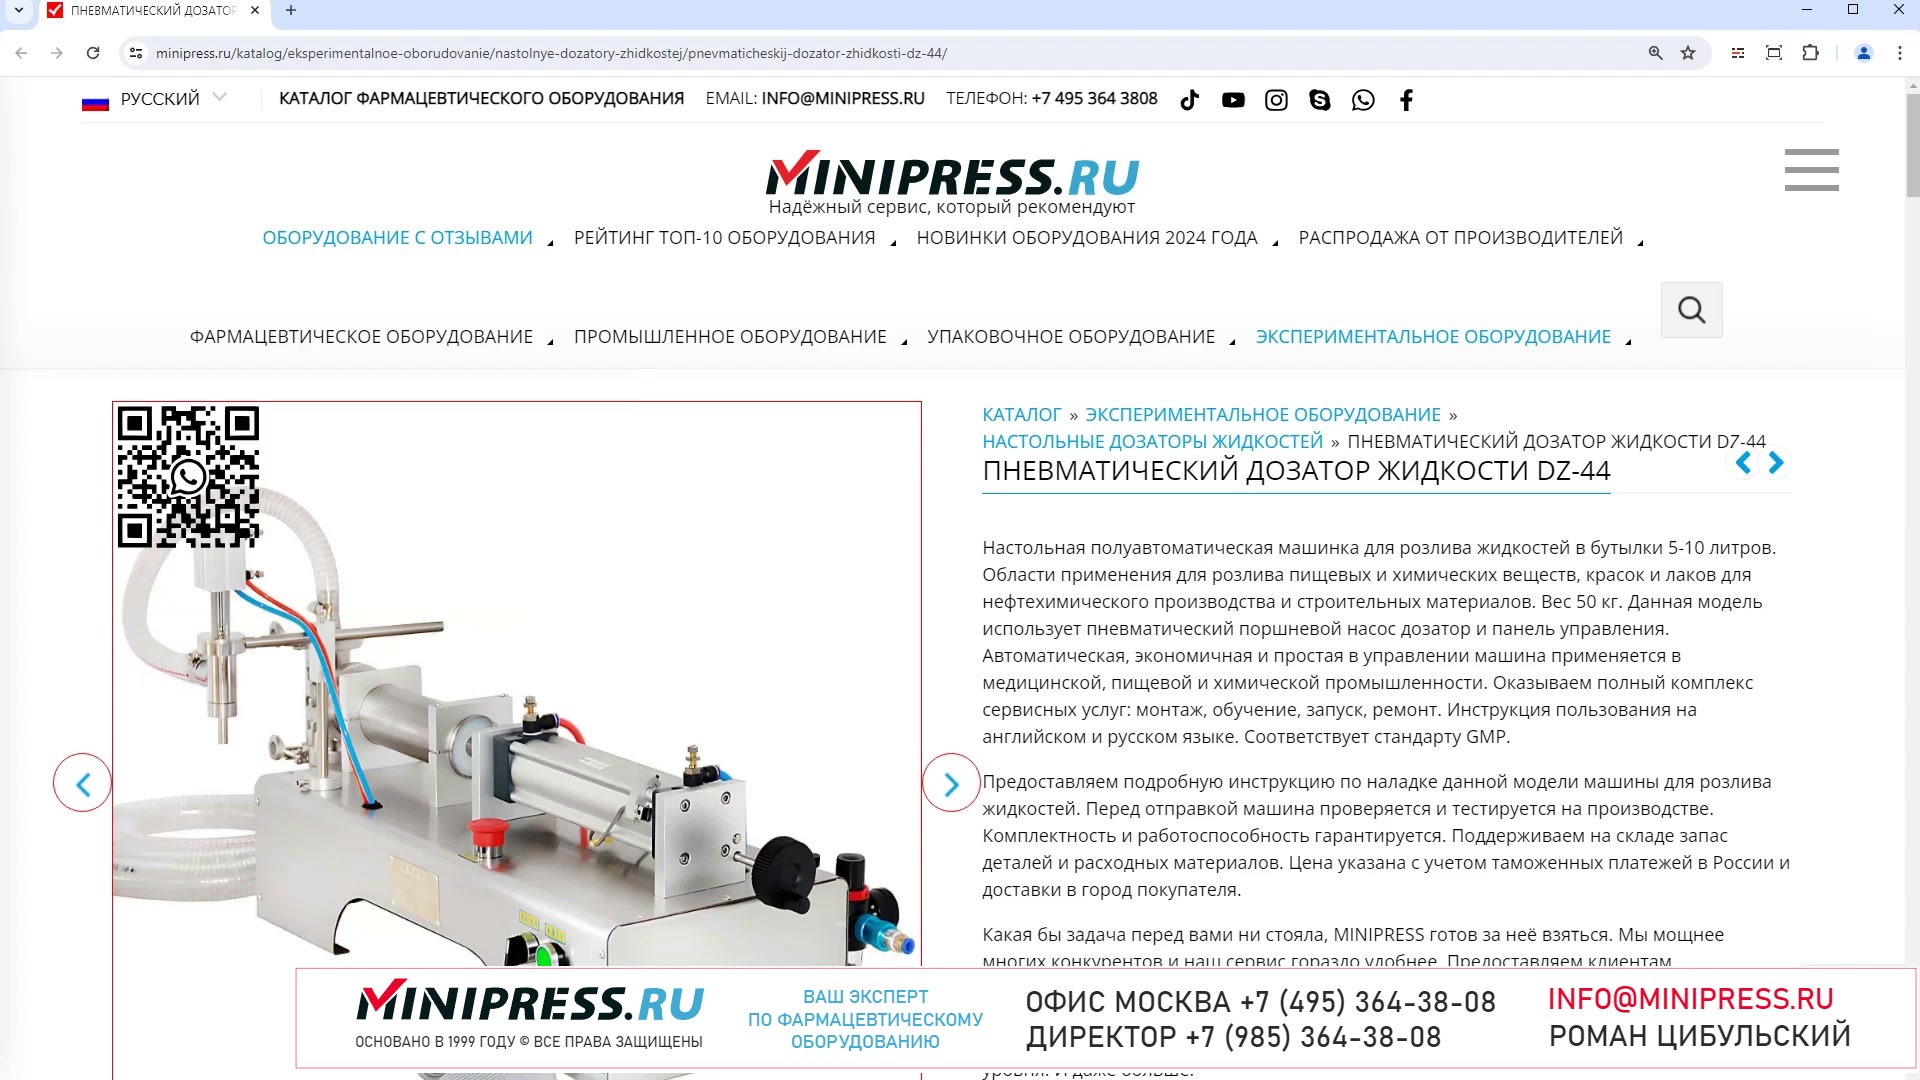 Minipress.ru Пневматический дозатор жидкости DZ-44